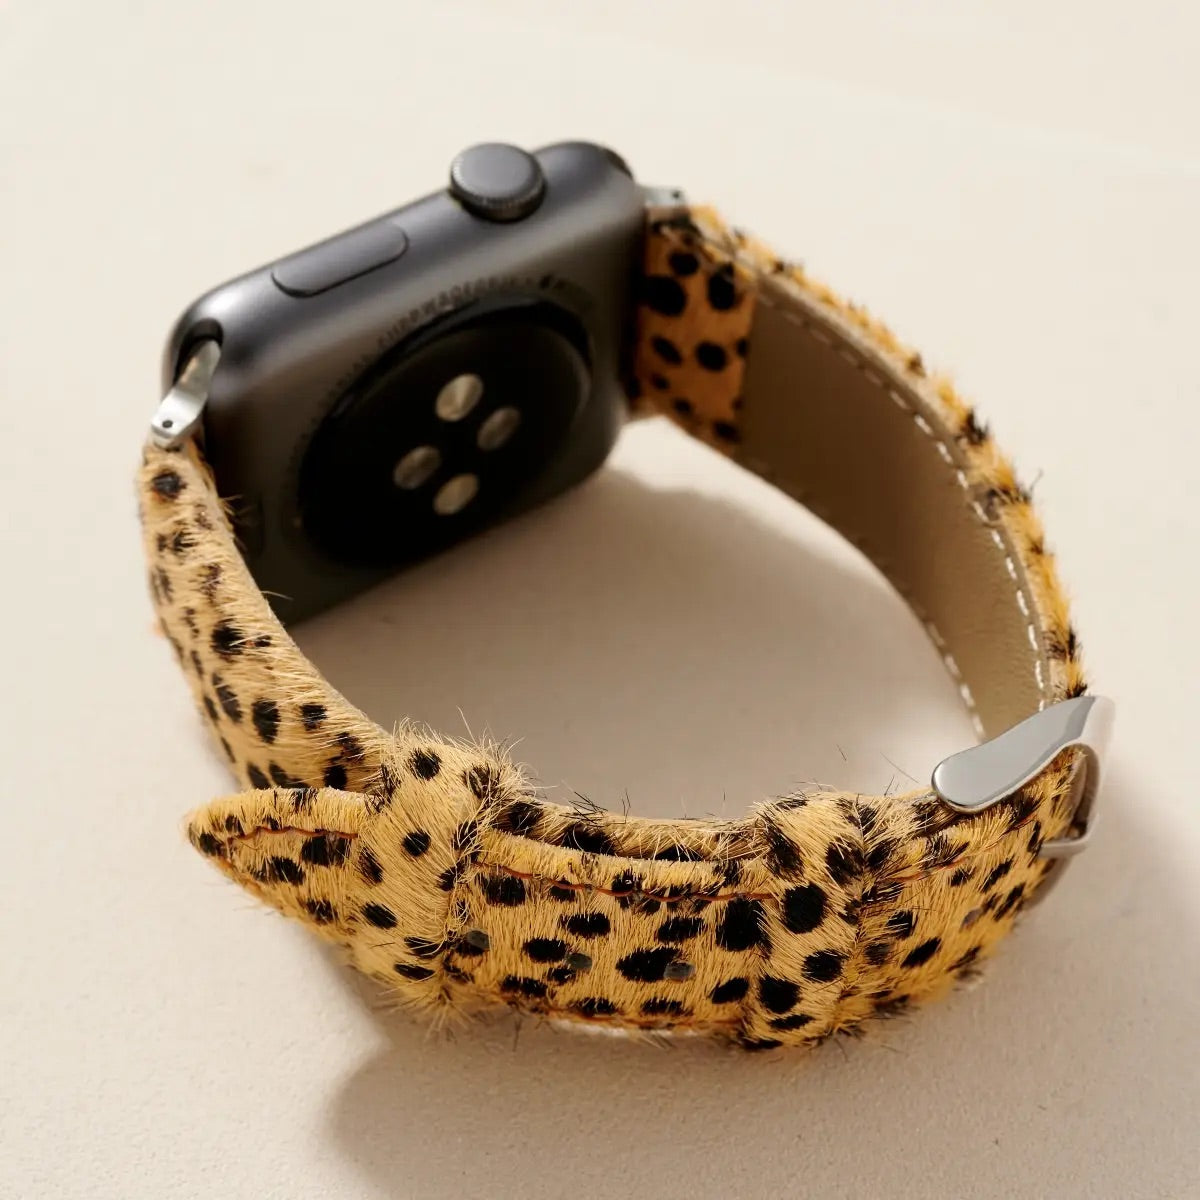 Calf Hair Apple Watch Band - Cheetah